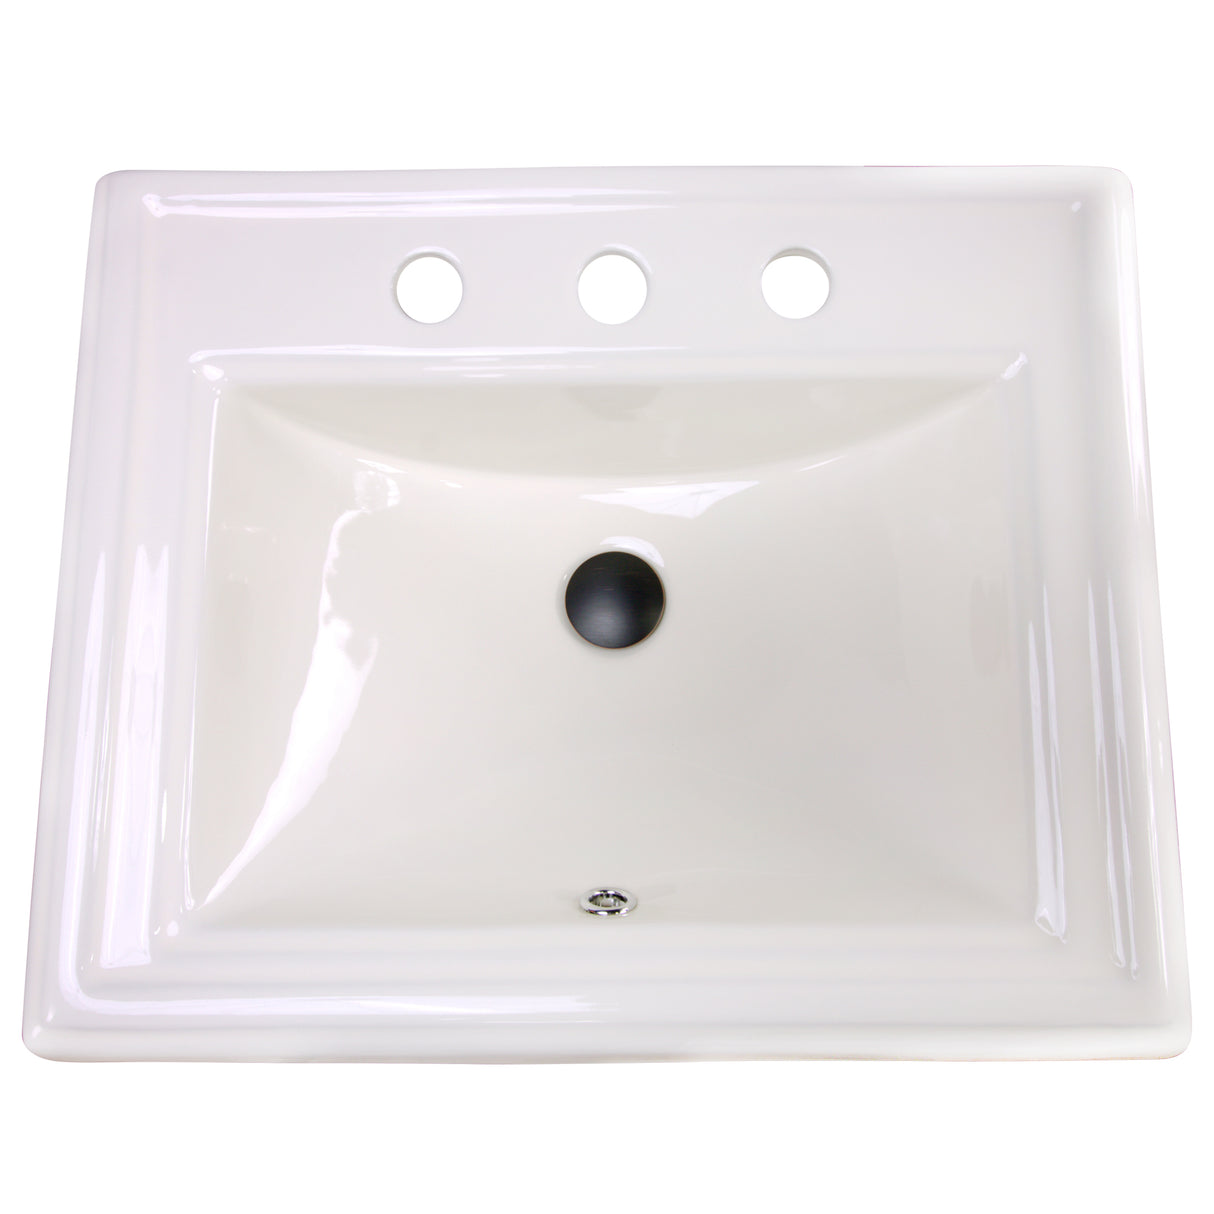 Nantucket Sinks 23 Inch Rectangular Drop-In Ceramic Vanity Sink DI-2418-R8-Bisque